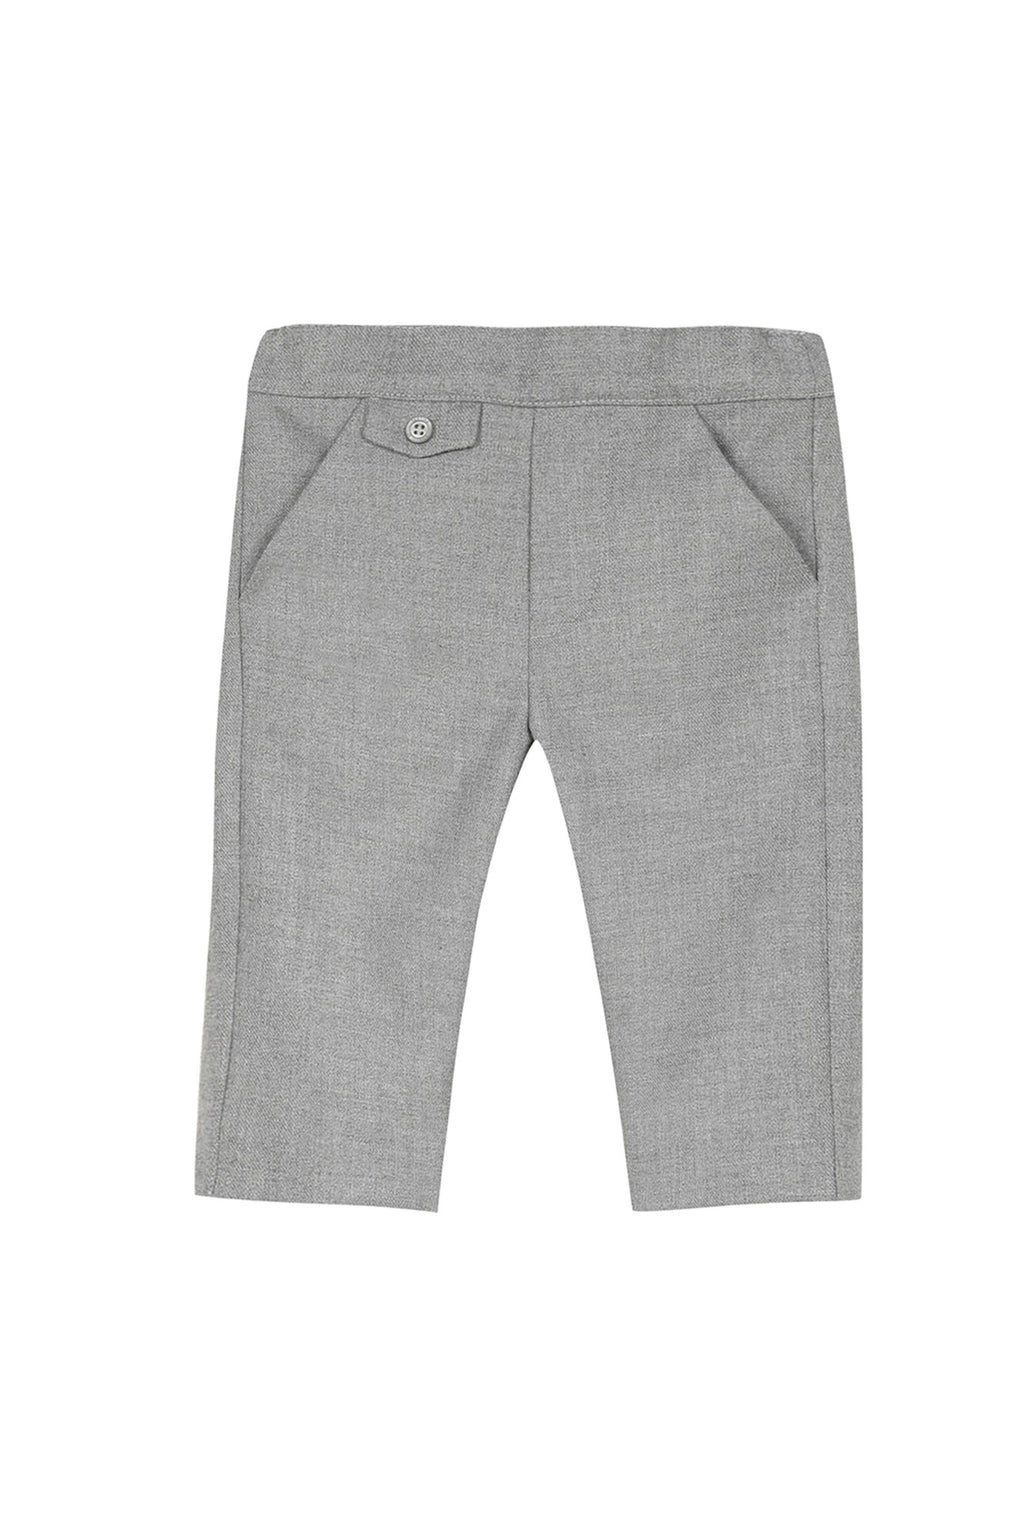 Pantalon - flanelle gris chiné moyen